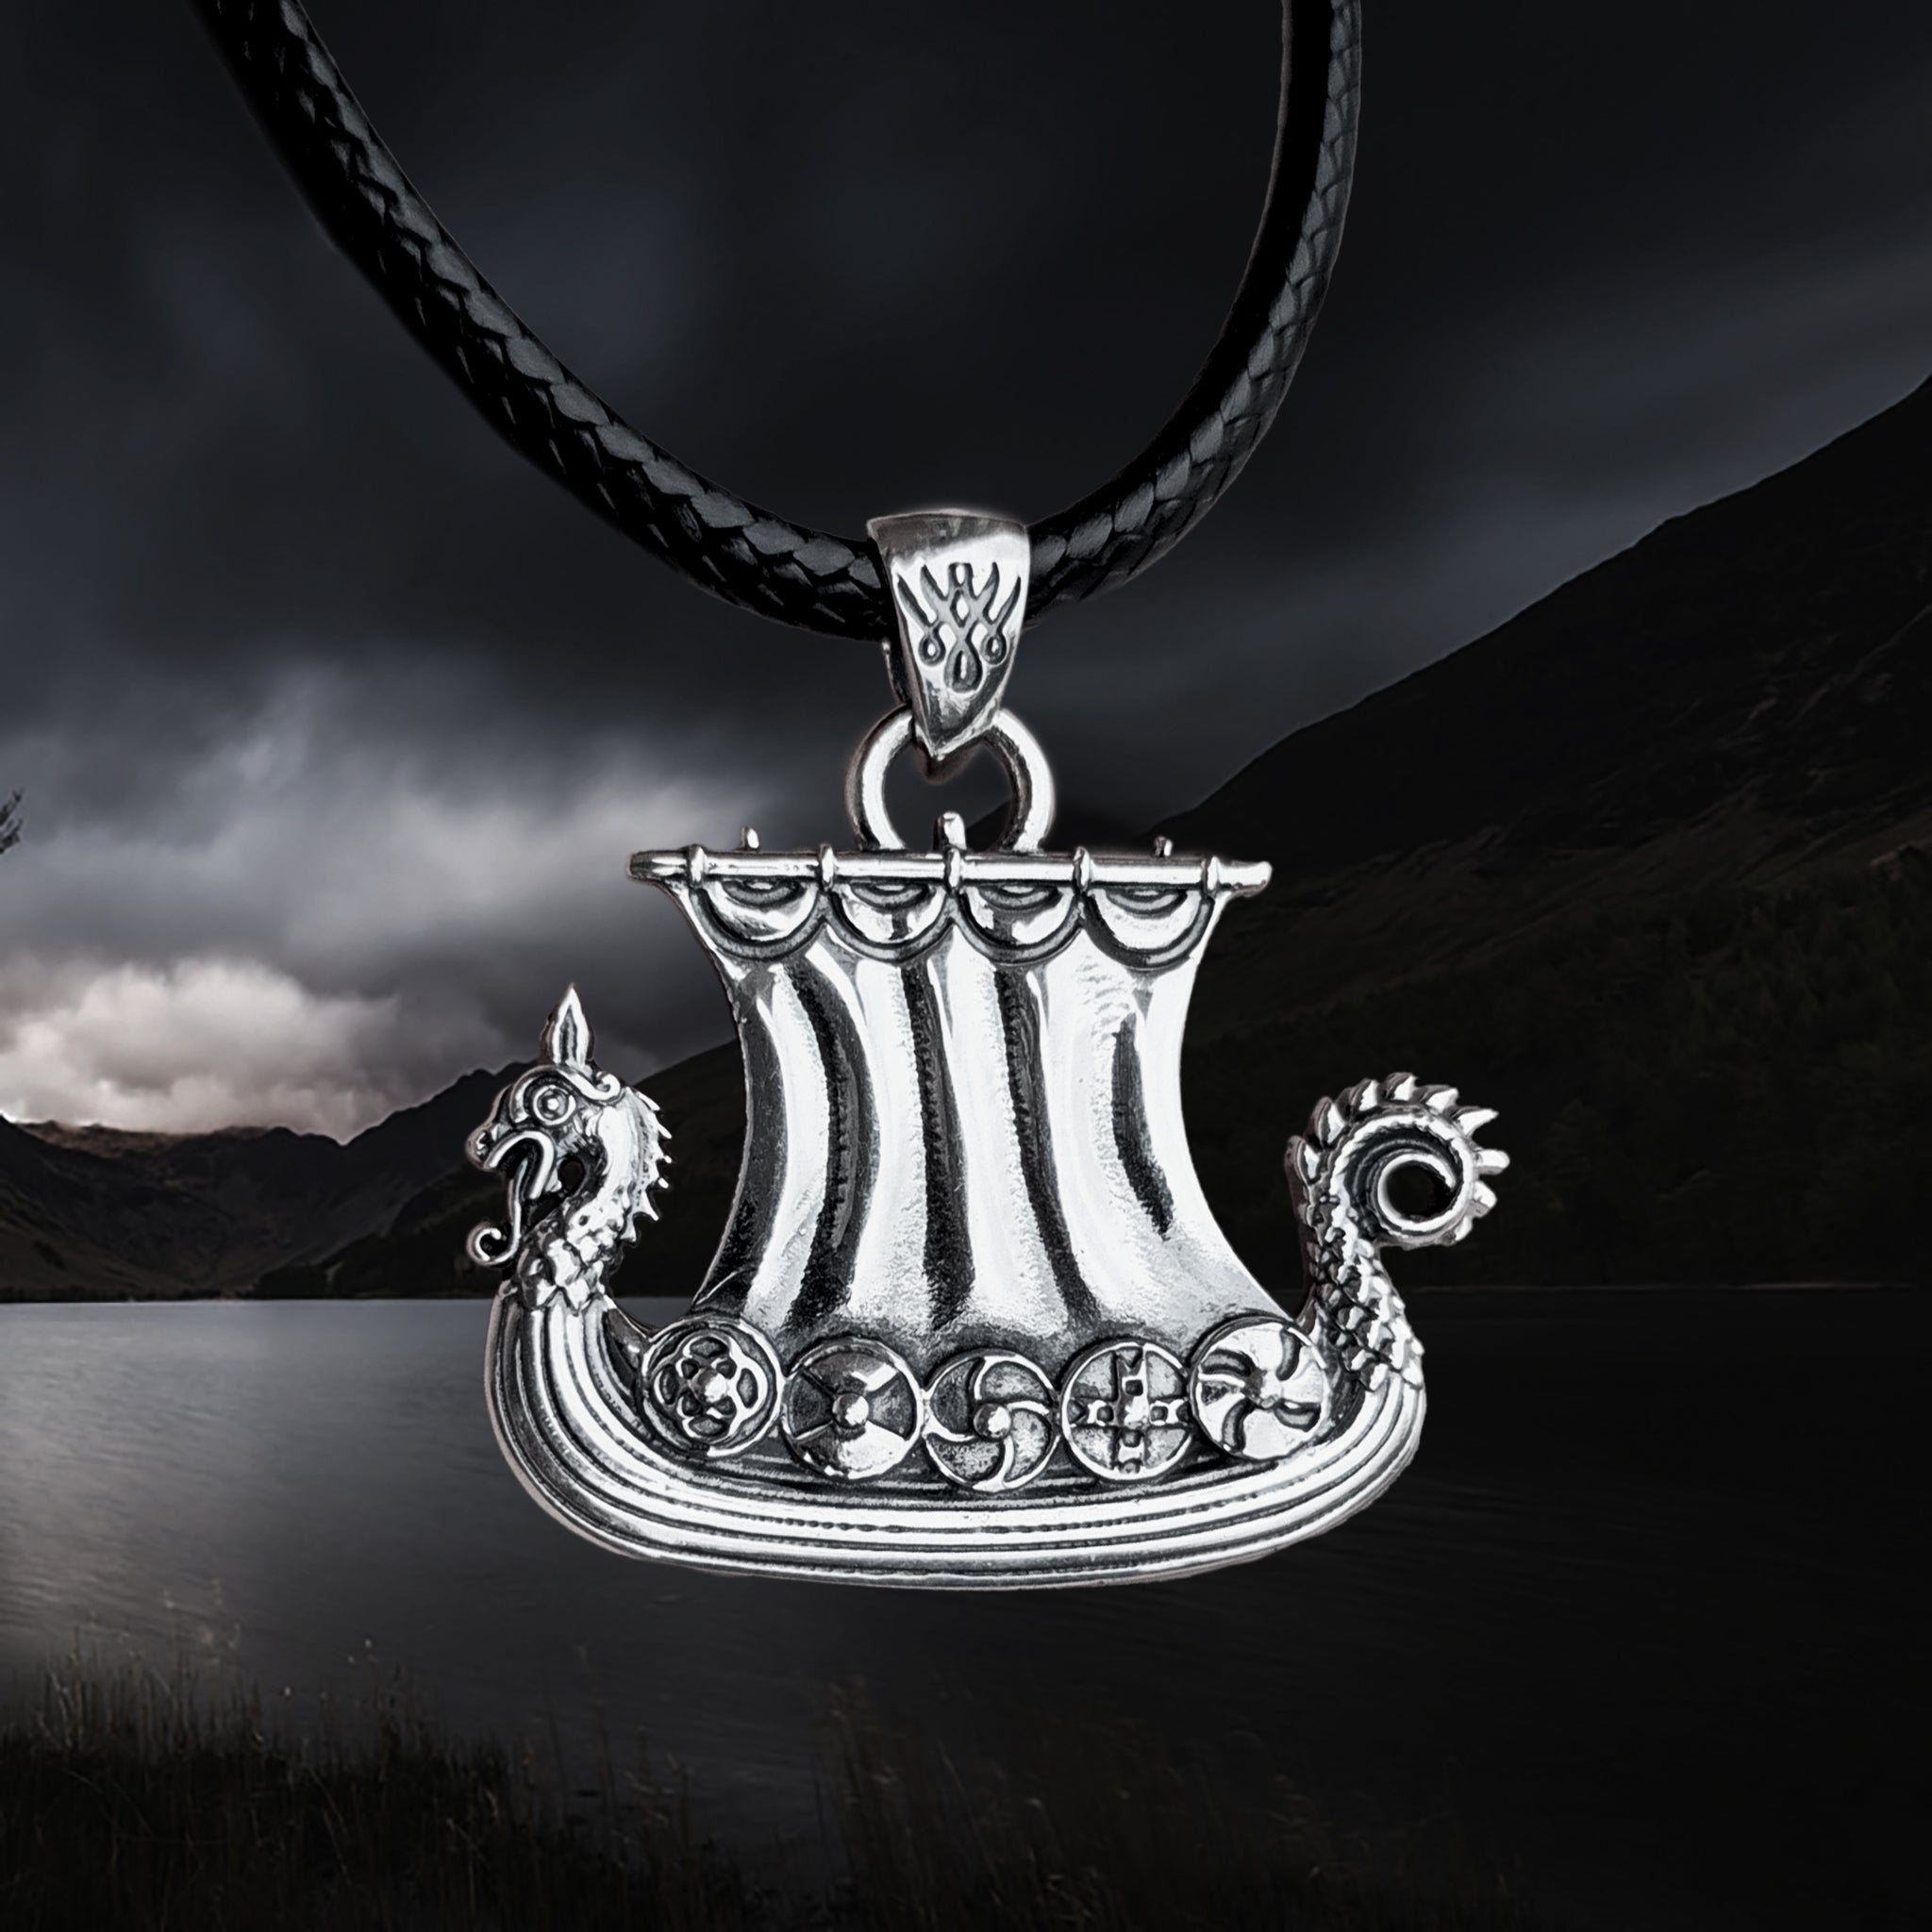 Silver Drakkar Viking Ship Pendant - Viking Jewelry